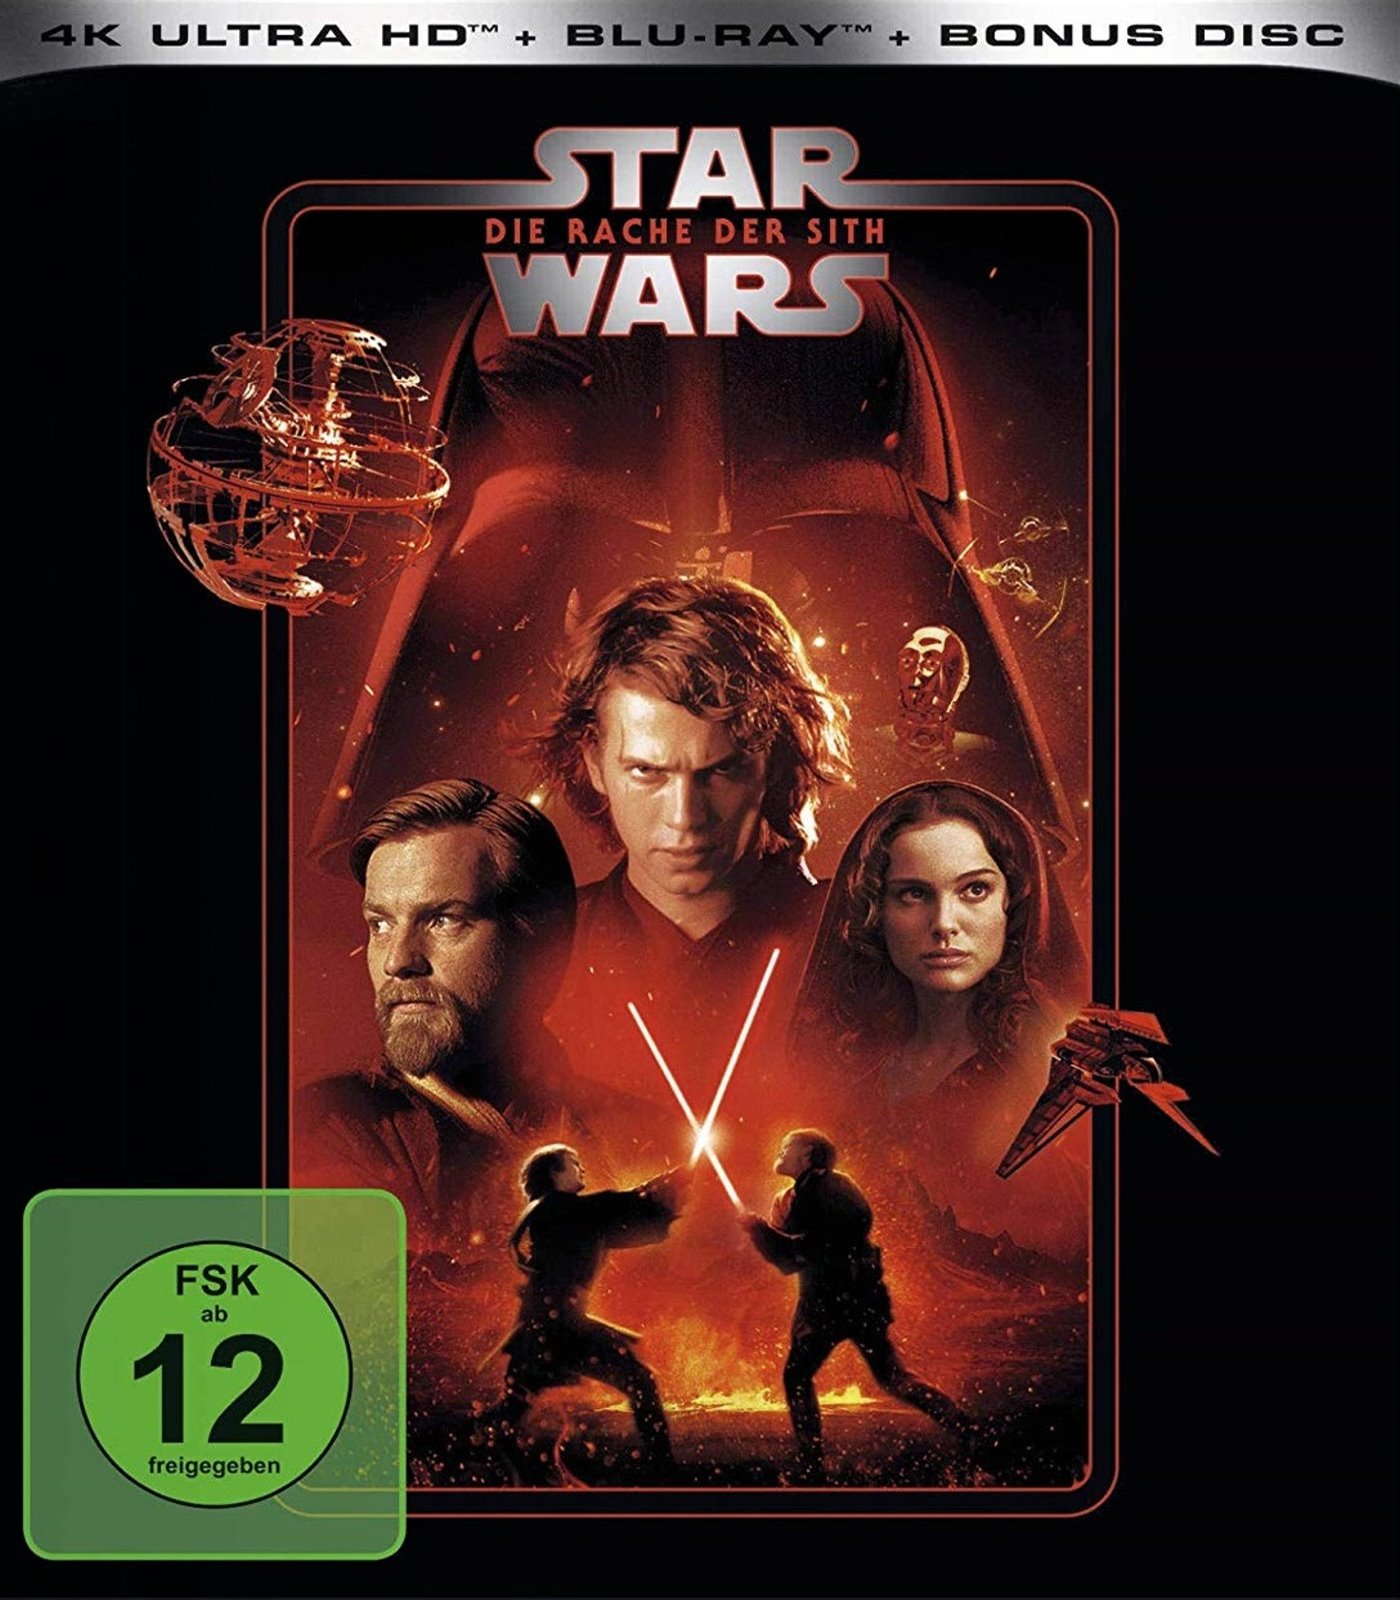 Cover - Star Wars - Die Rache der Sith.jpg